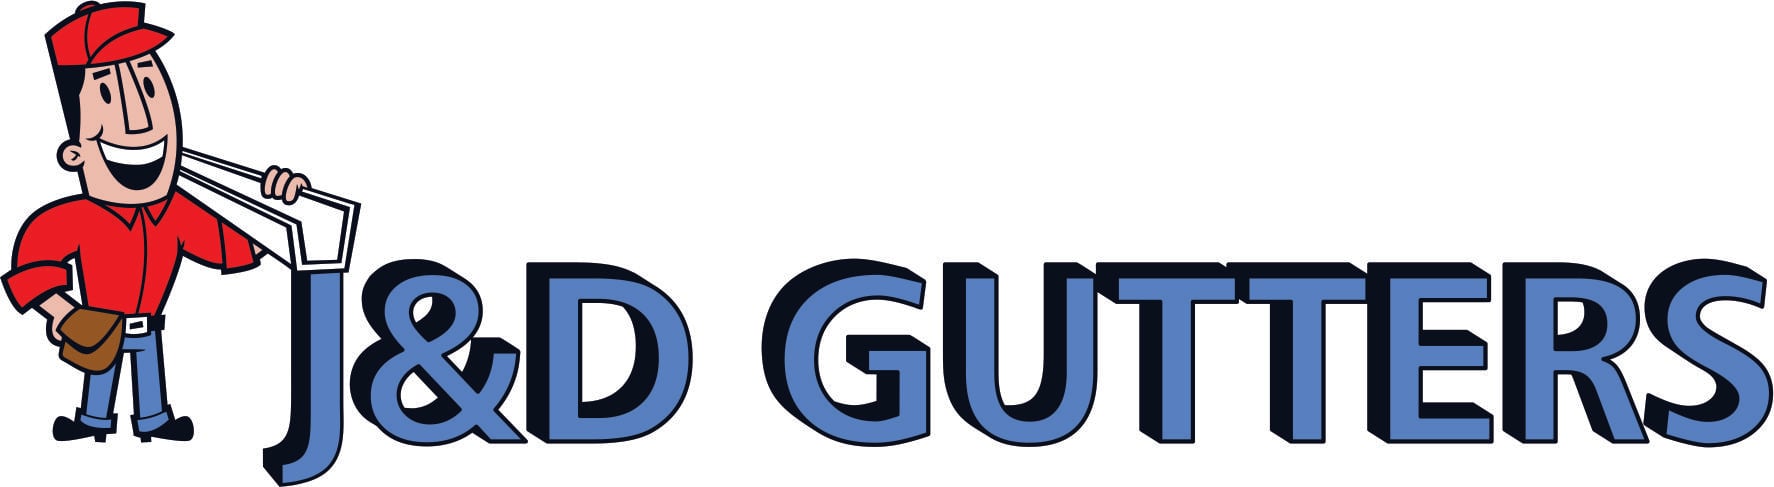 J & D Gutters Logo